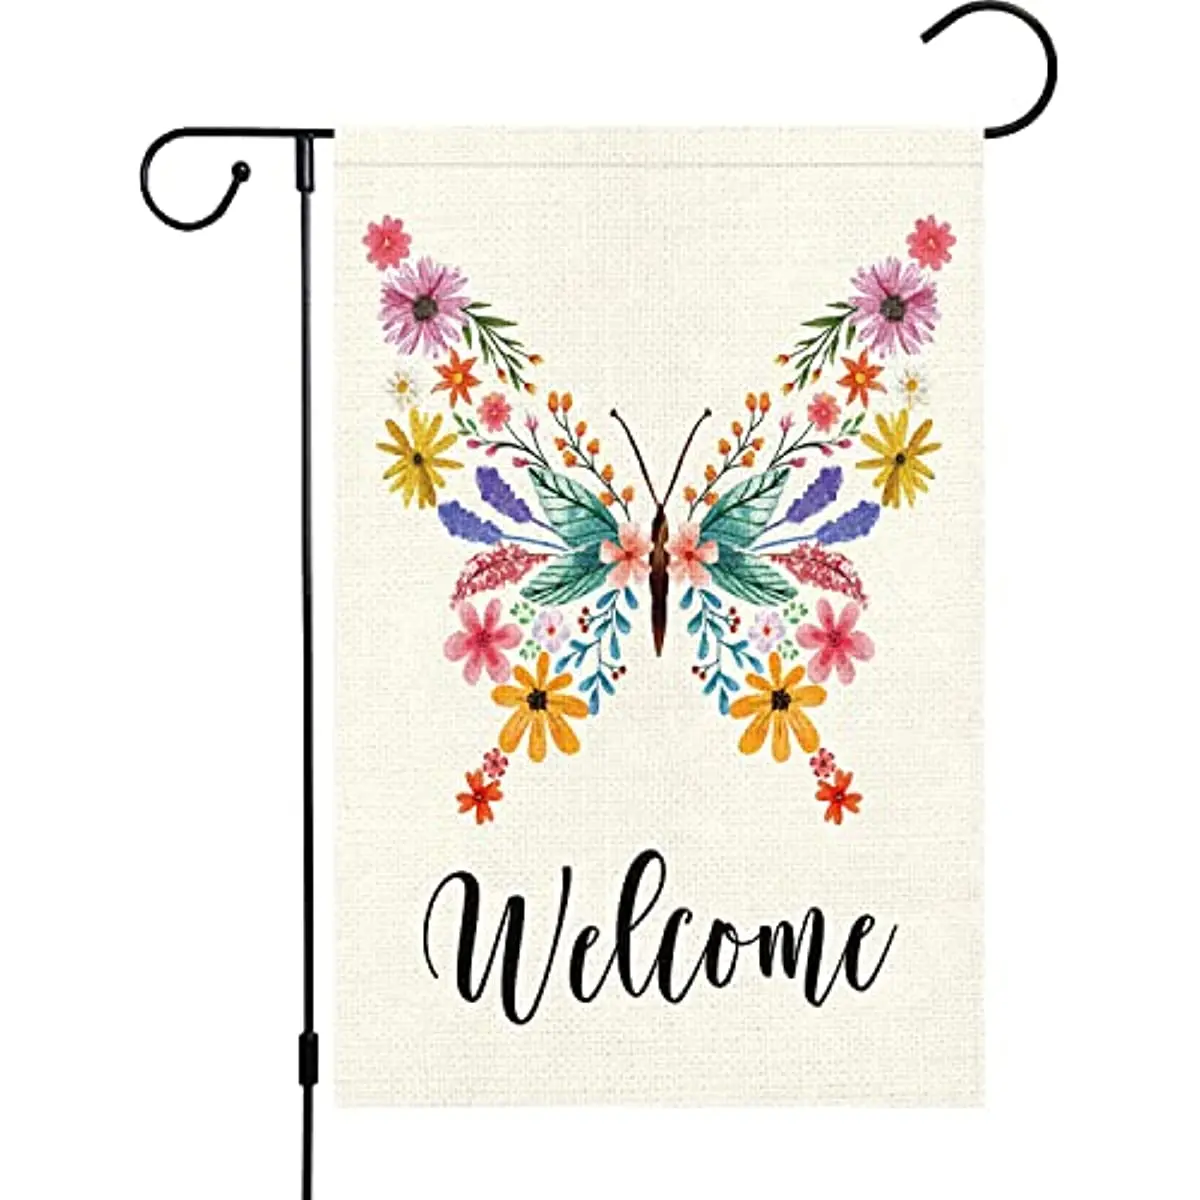 

Добро пожаловать, весенний цветочный Садовый флаг 12x18, двусторонний, маленькая стоячая весенняя бабочка для сада